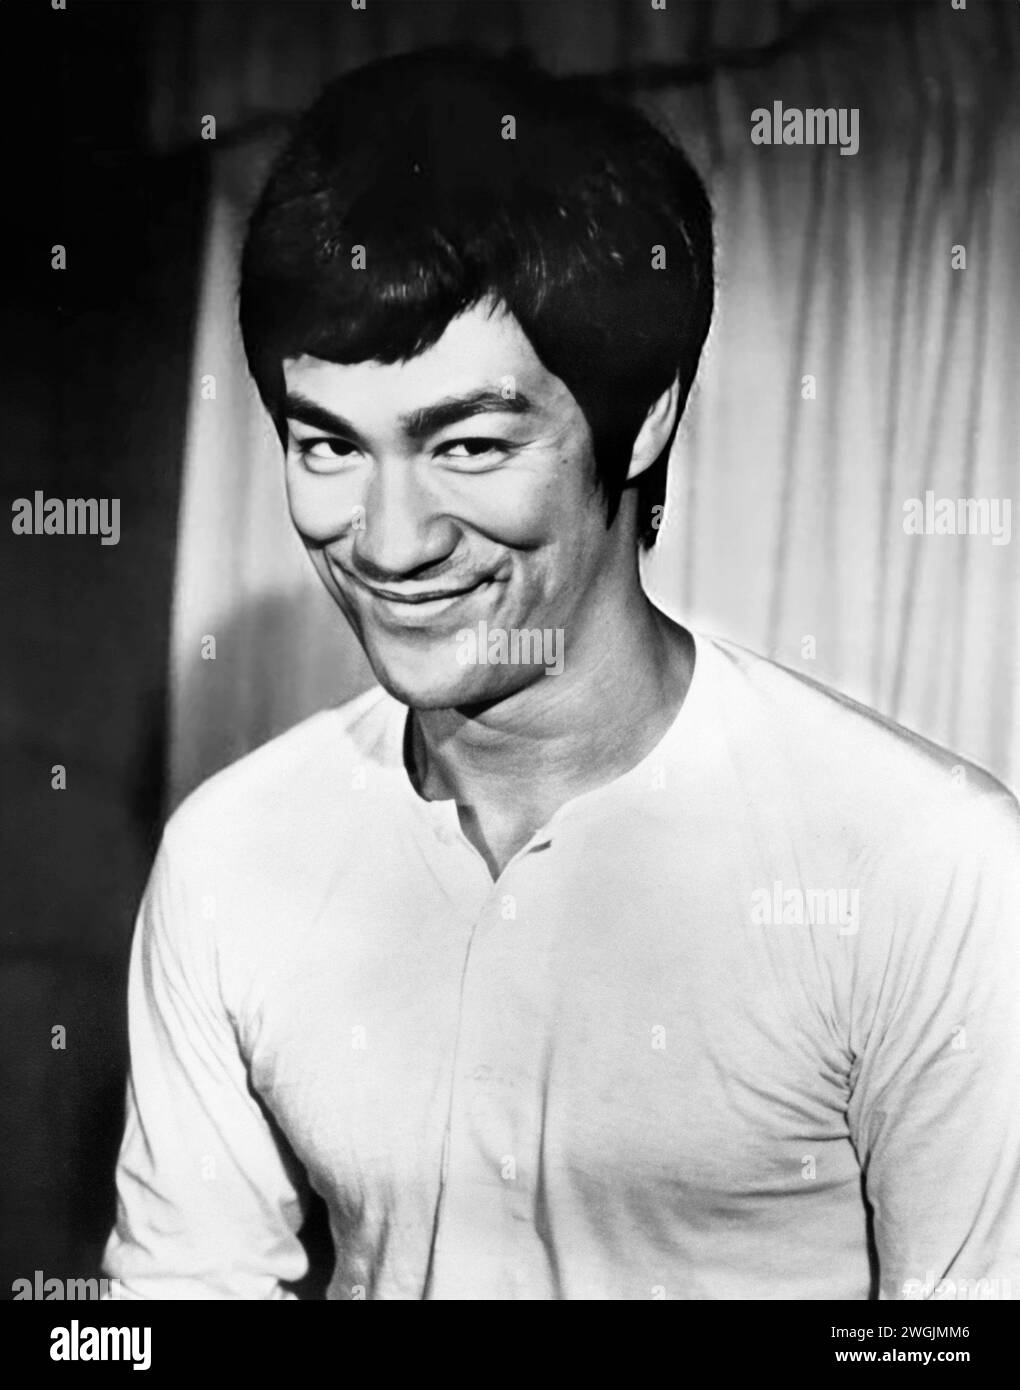 Bruce Lee. Retrato del artista y actor marcial estadounidense de Hong Kong, Bruce Lee (nacido en Lee Jun-fan,, 1940-1973)f rom La película Puños de furia (también conocido como El gran jefe), c. 1971 Foto de stock